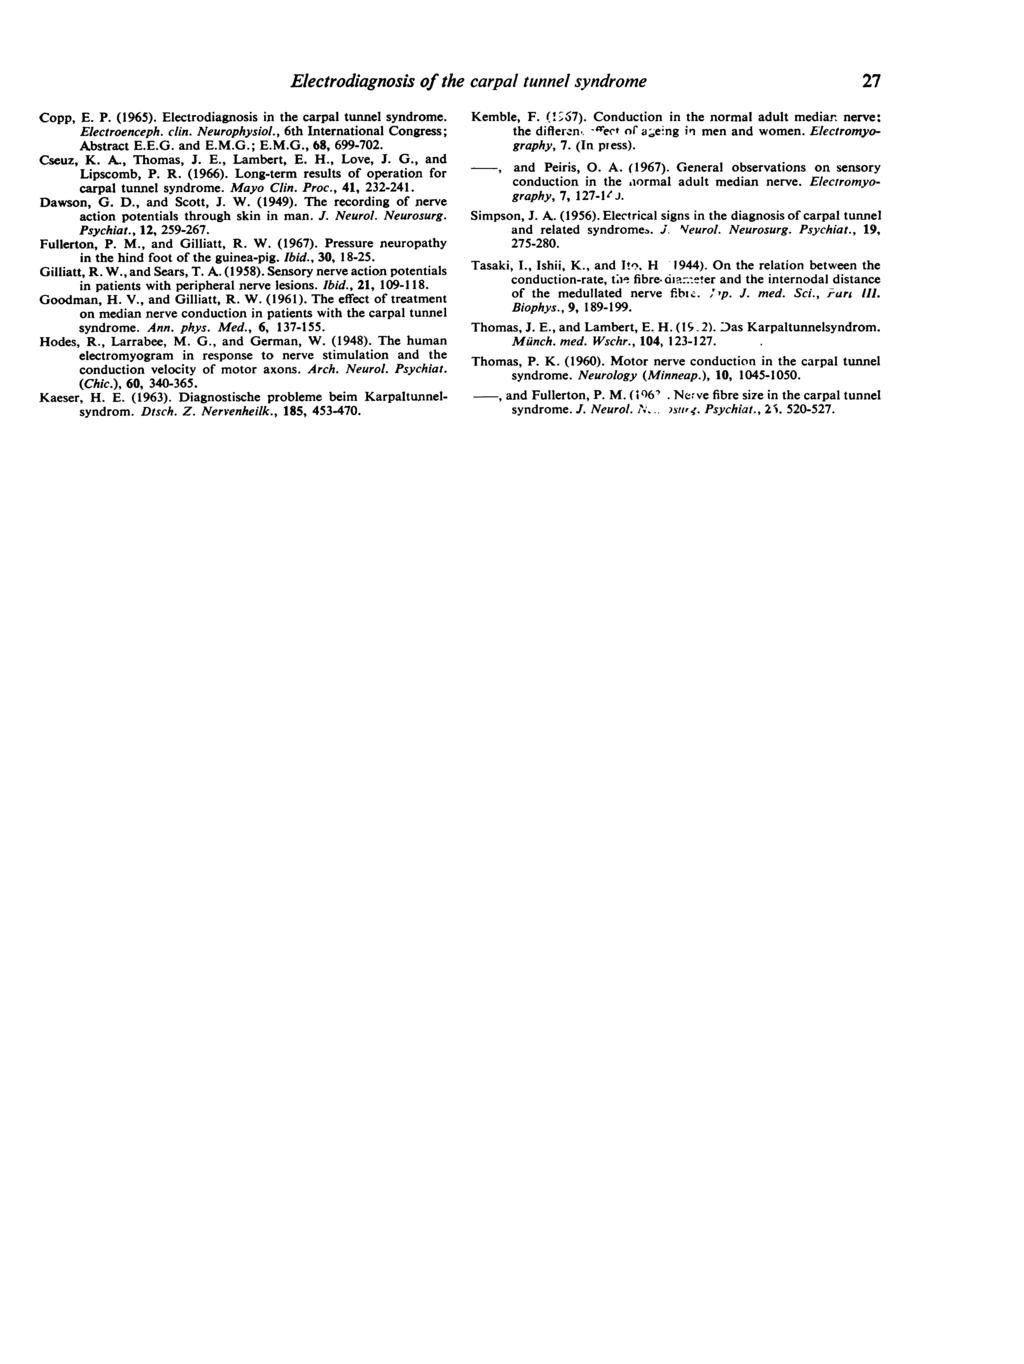 Copp, E. P. (1965). Electrodiagnosis in the carpal tunnel syndrome. Electroenceph. clin. Neurophysiol., 6th International Congress; Abstract E.E.G. and E.M.G.; E.M.G., 68, 699-702. Cseuz, K. A., Thomas, J.